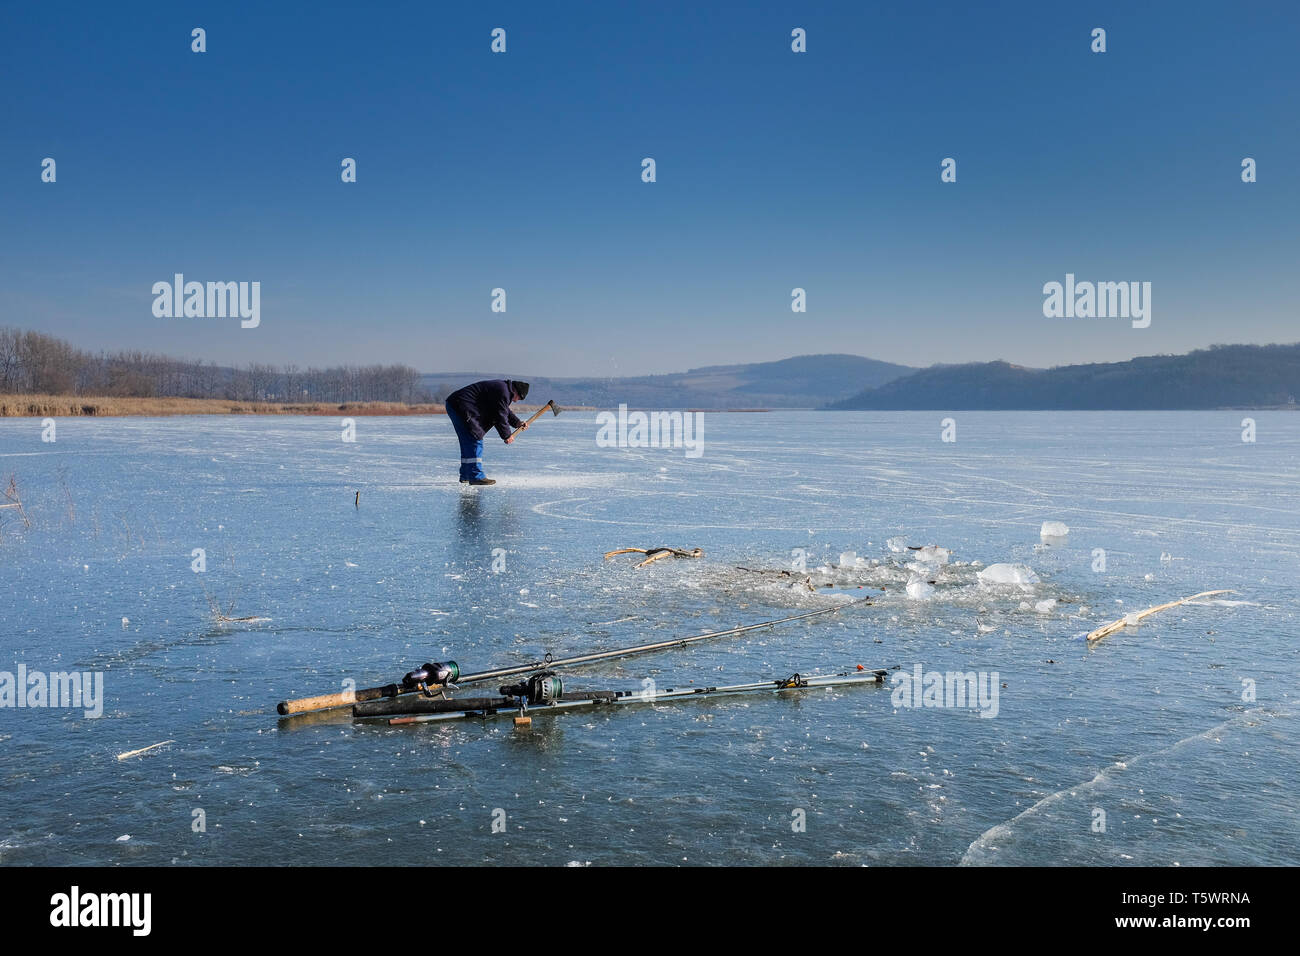 Fishermen on the ice of the Rakaca Water reserve near Rakaca, Hungary Stock  Photo - Alamy